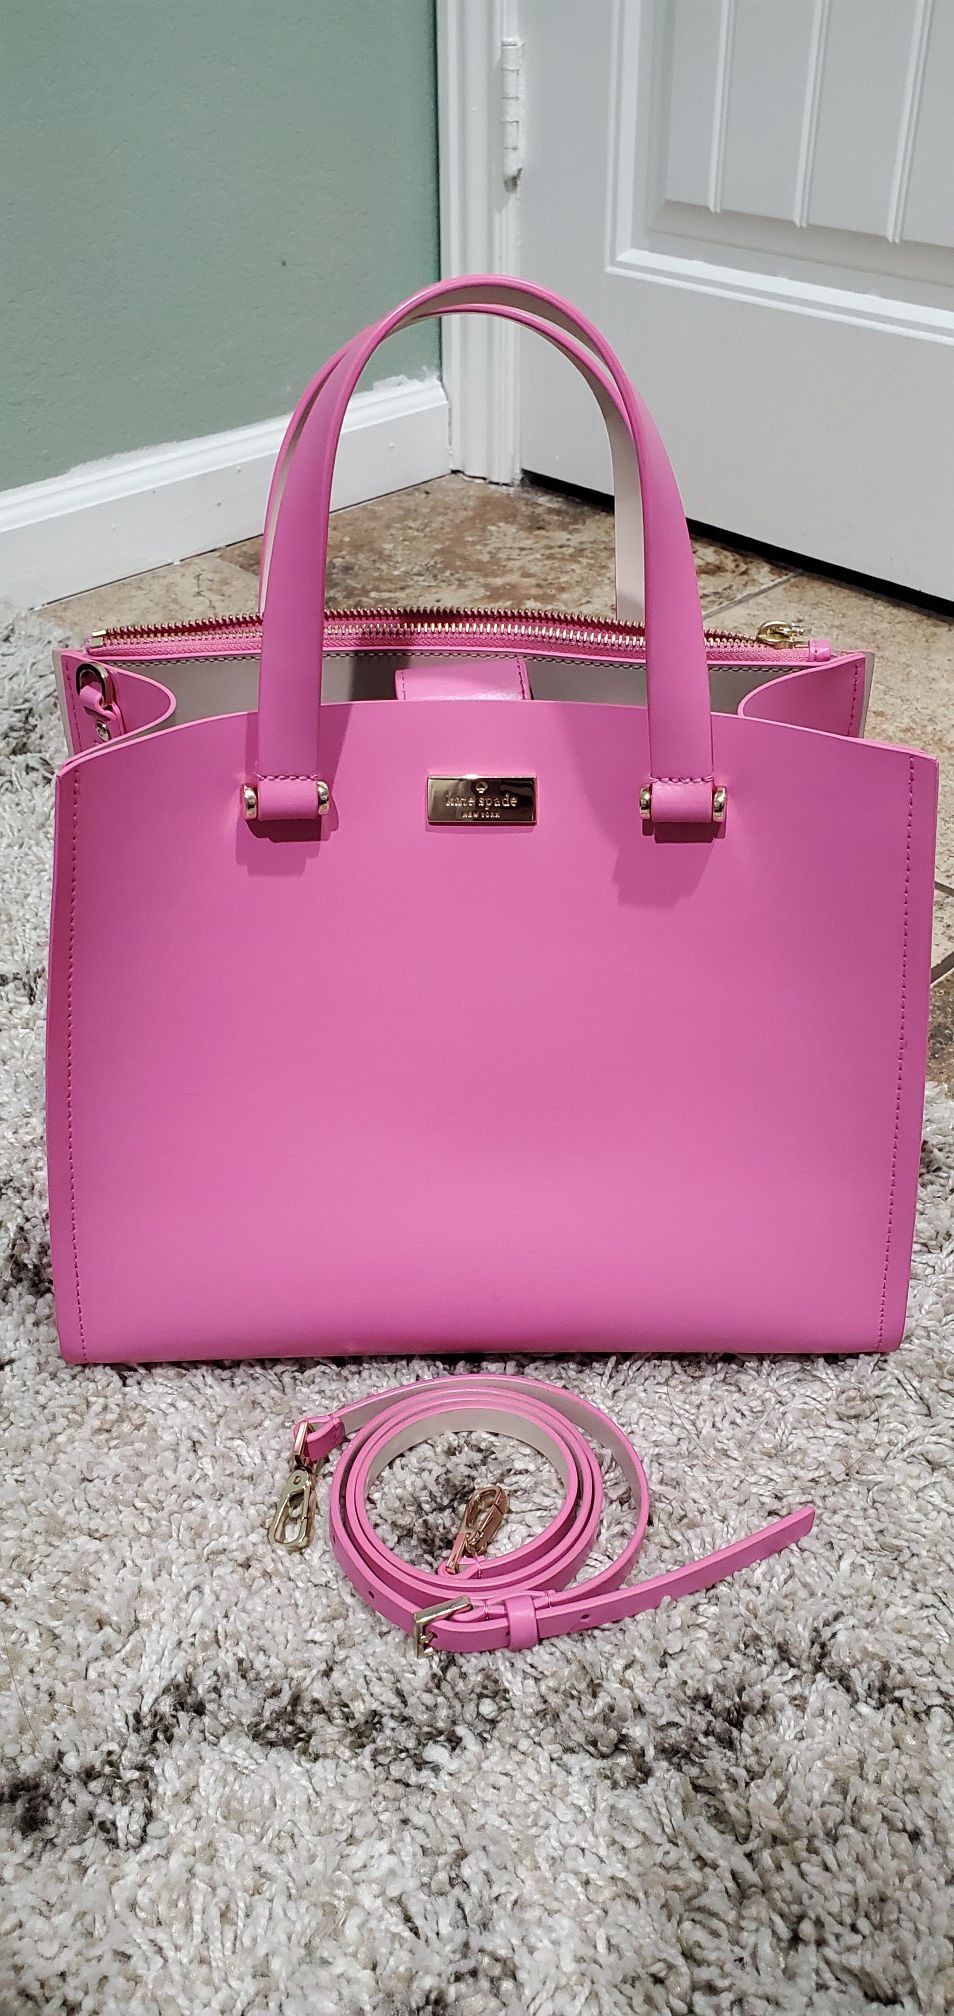 Kate spade pink bag